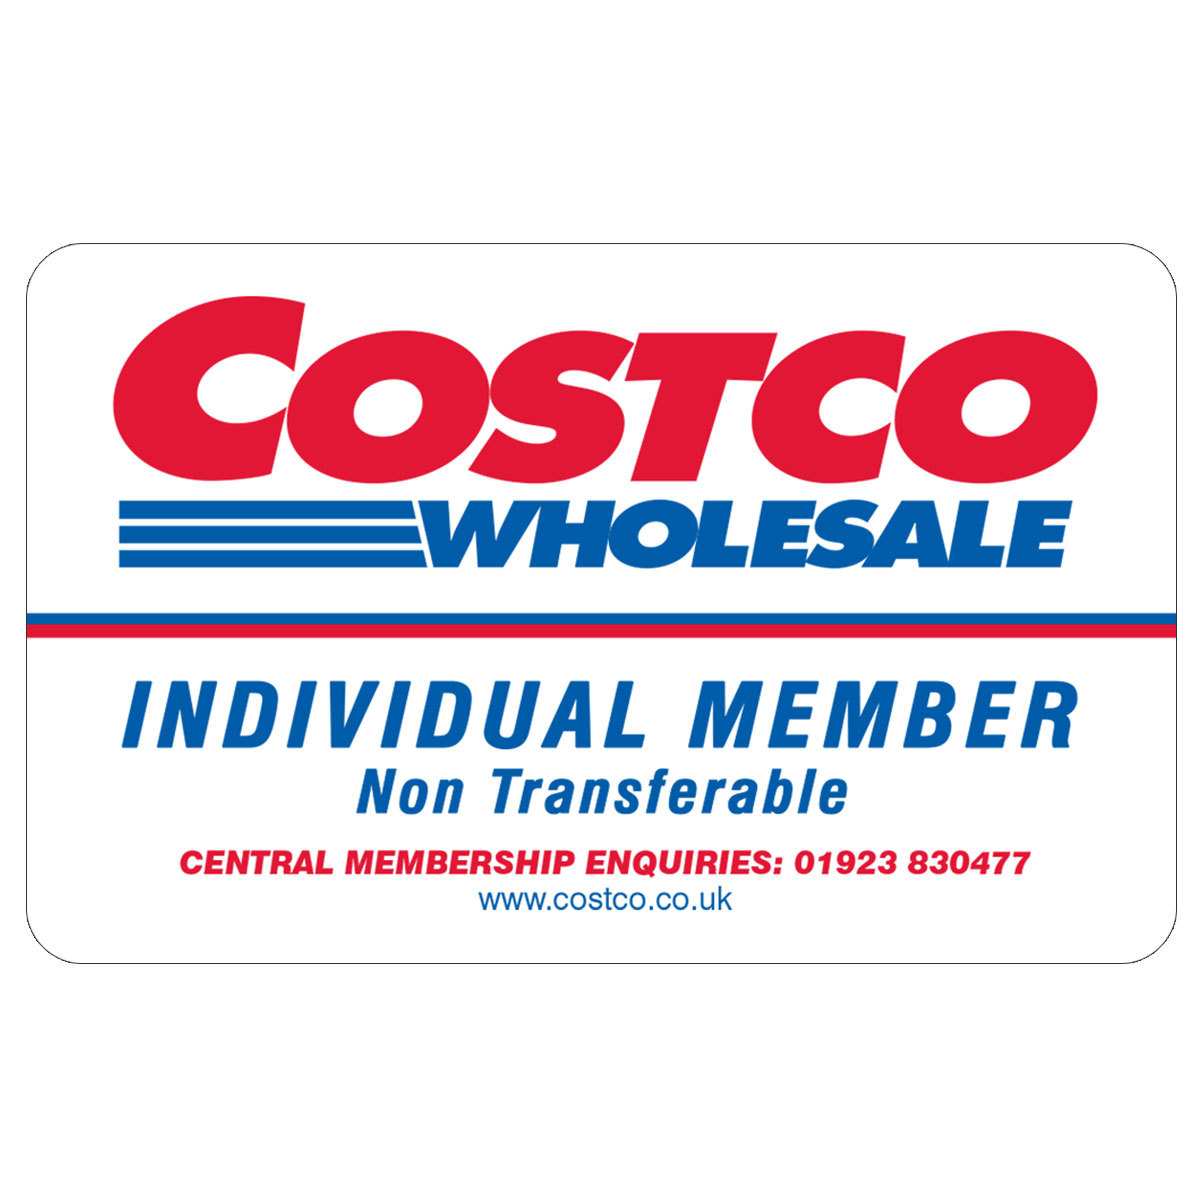 Warehouse Individual Membership Renewal